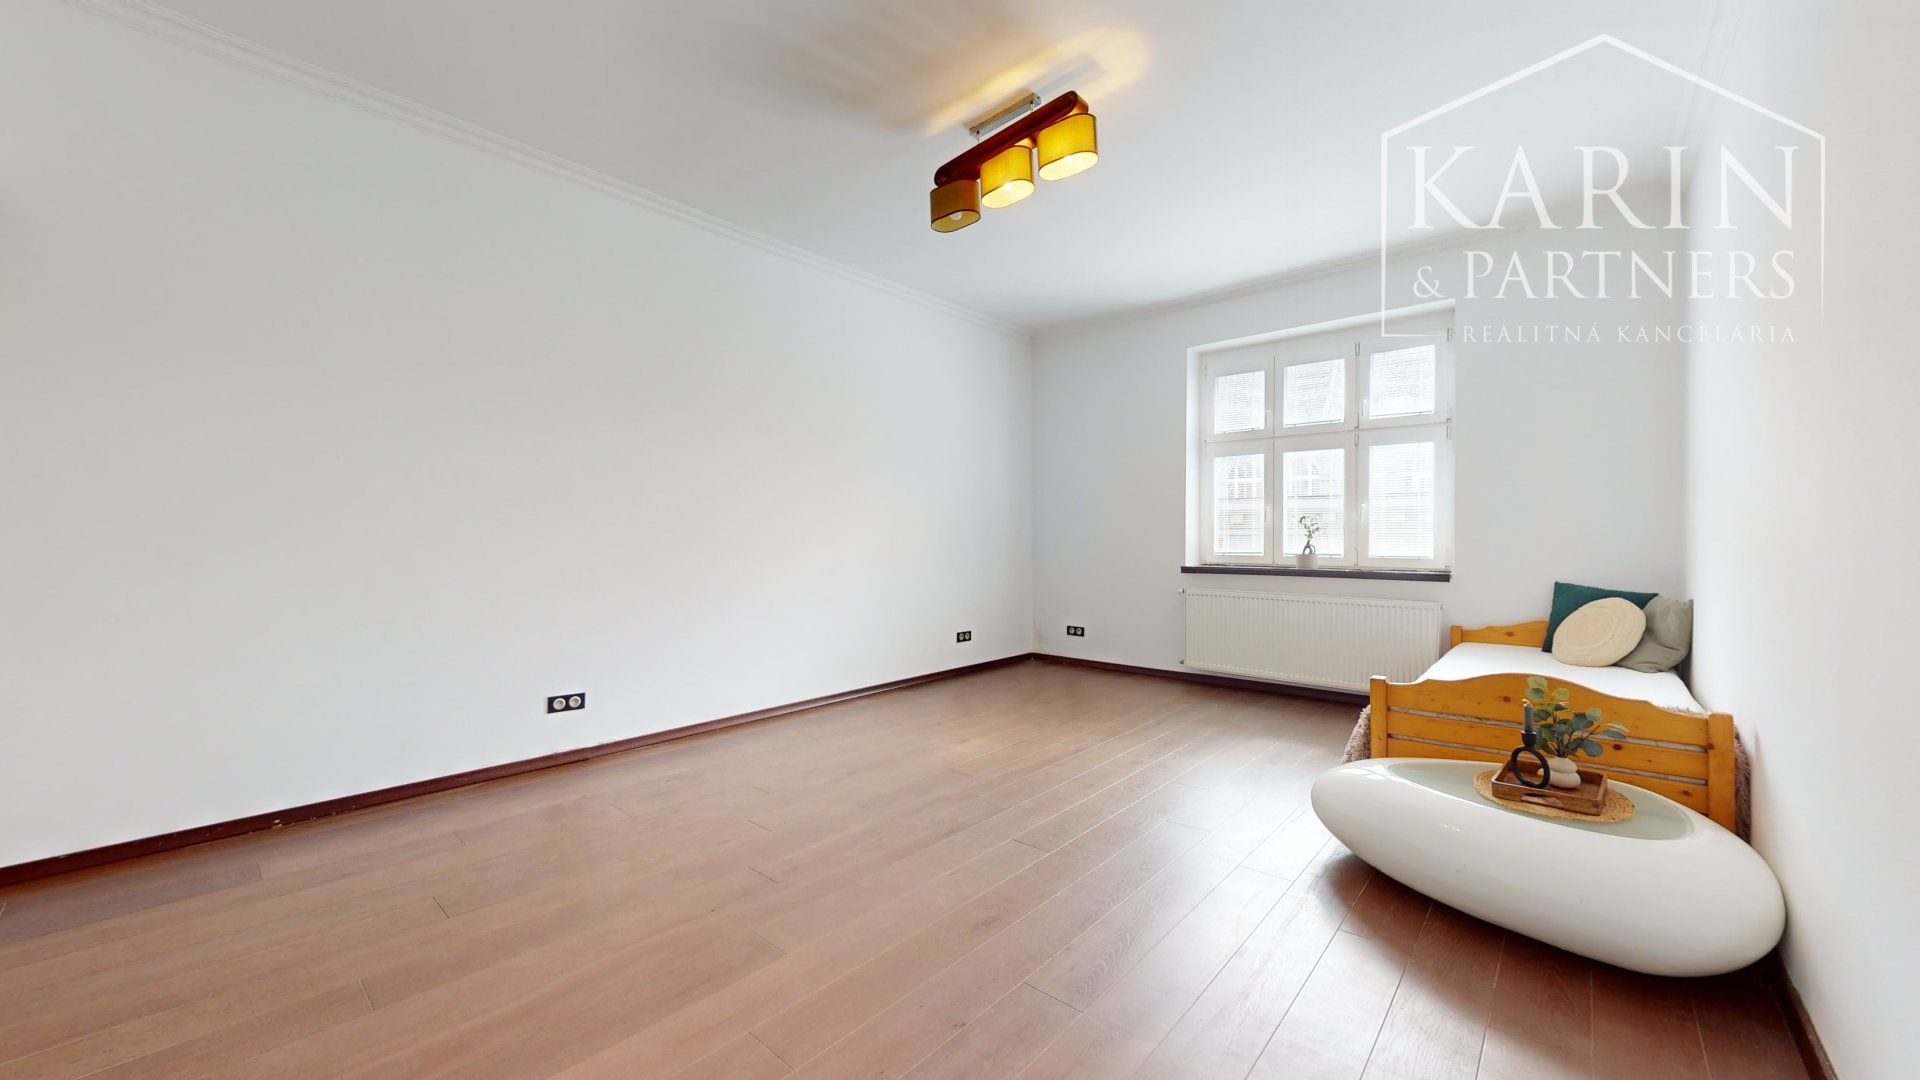 2-izbový byt v centre mesta - 61 m2 s balkónom a klimatizáciou